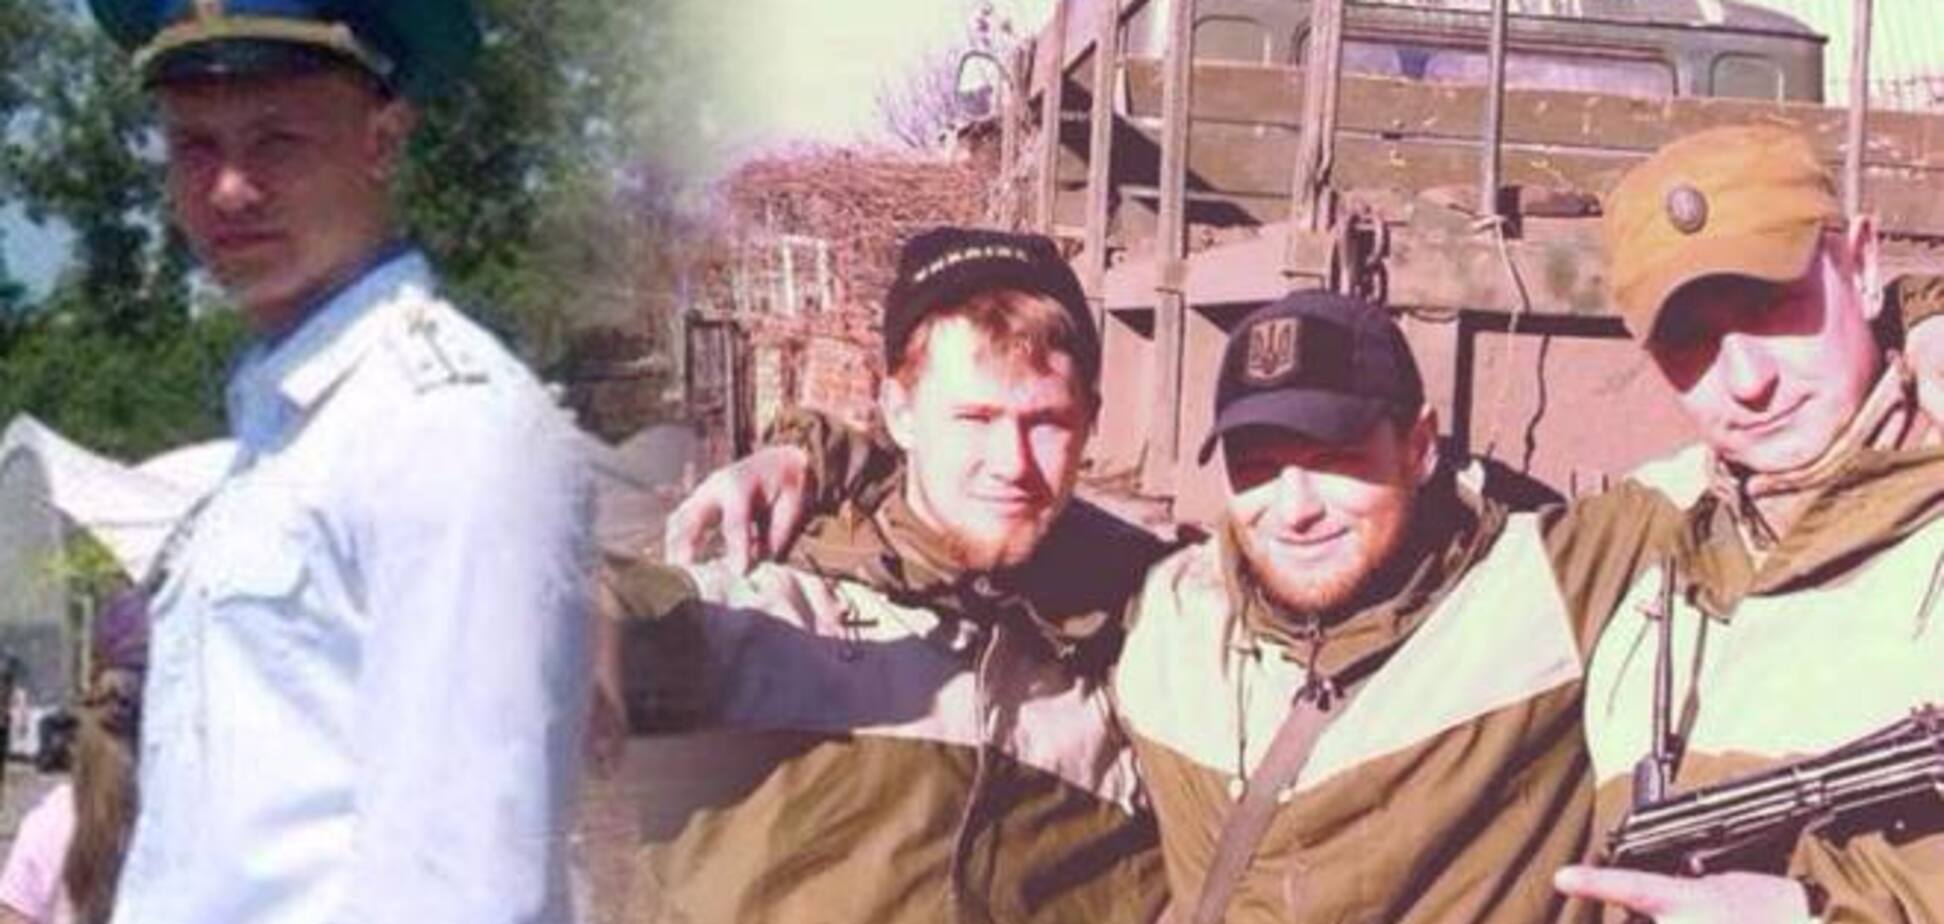 Екс-агент ФСБ 'кіборг' Богданов розповів, як став 'правосеком'